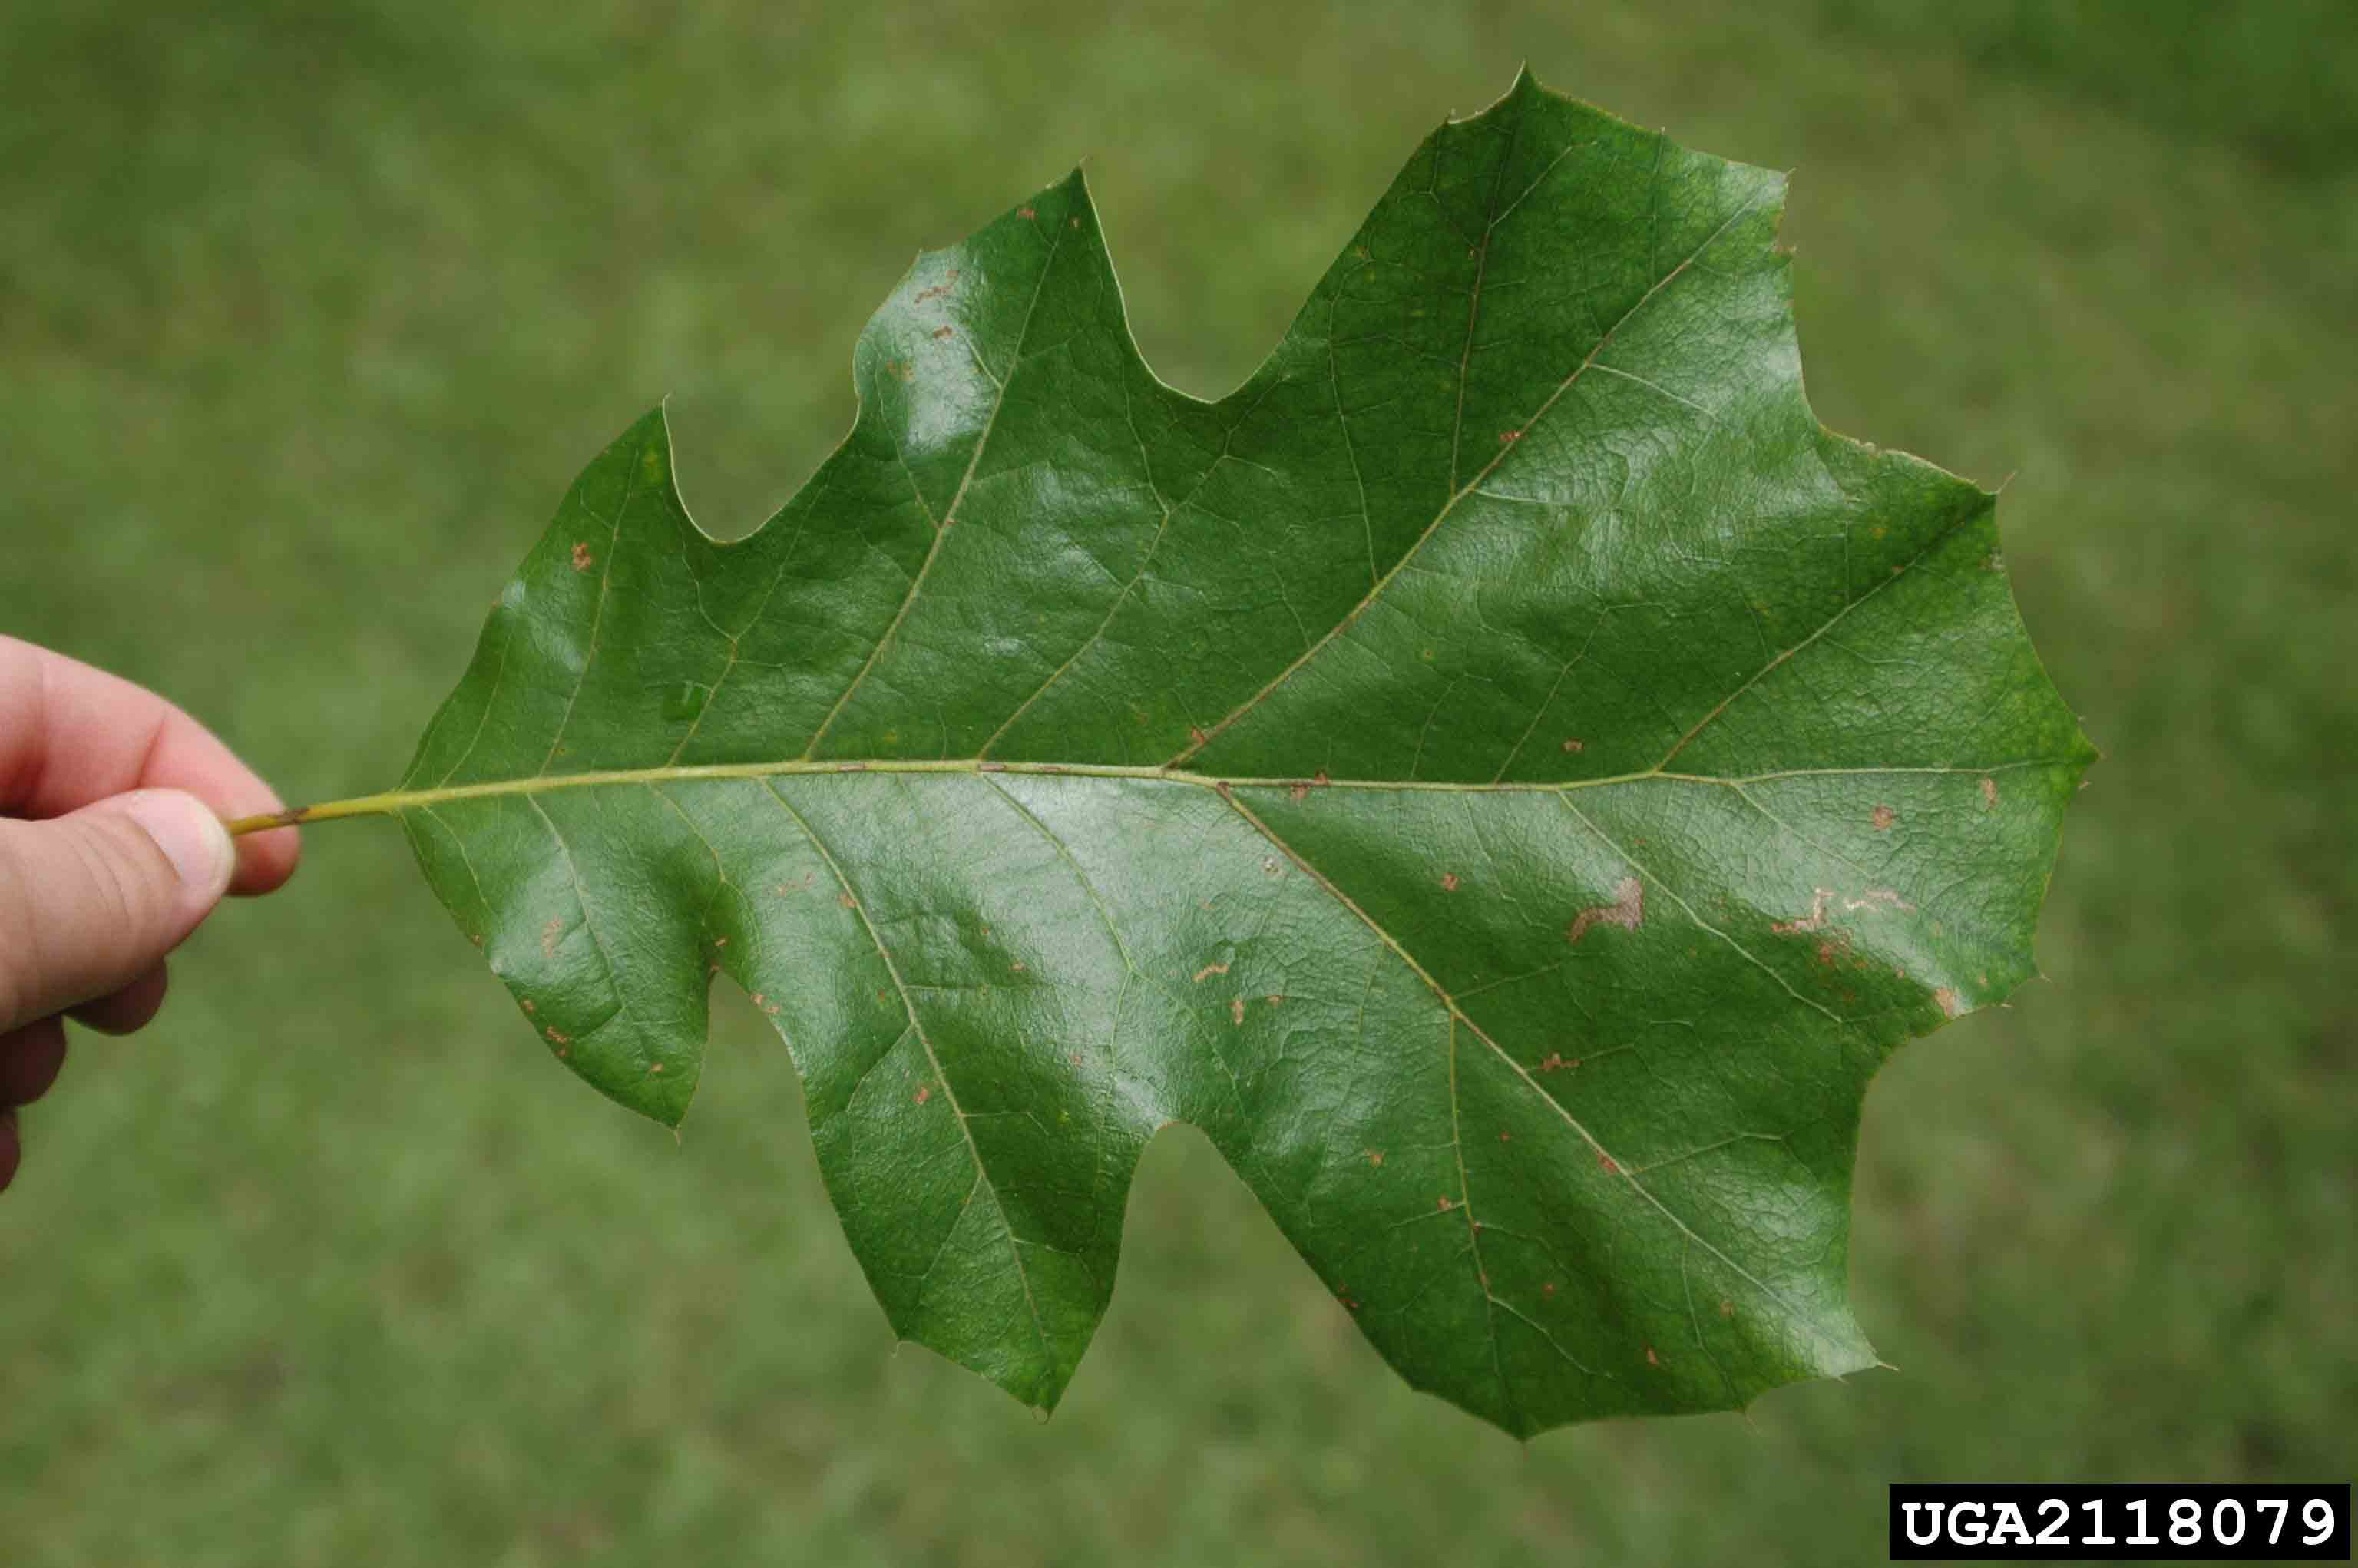 Black oak leaf, up to 10" long